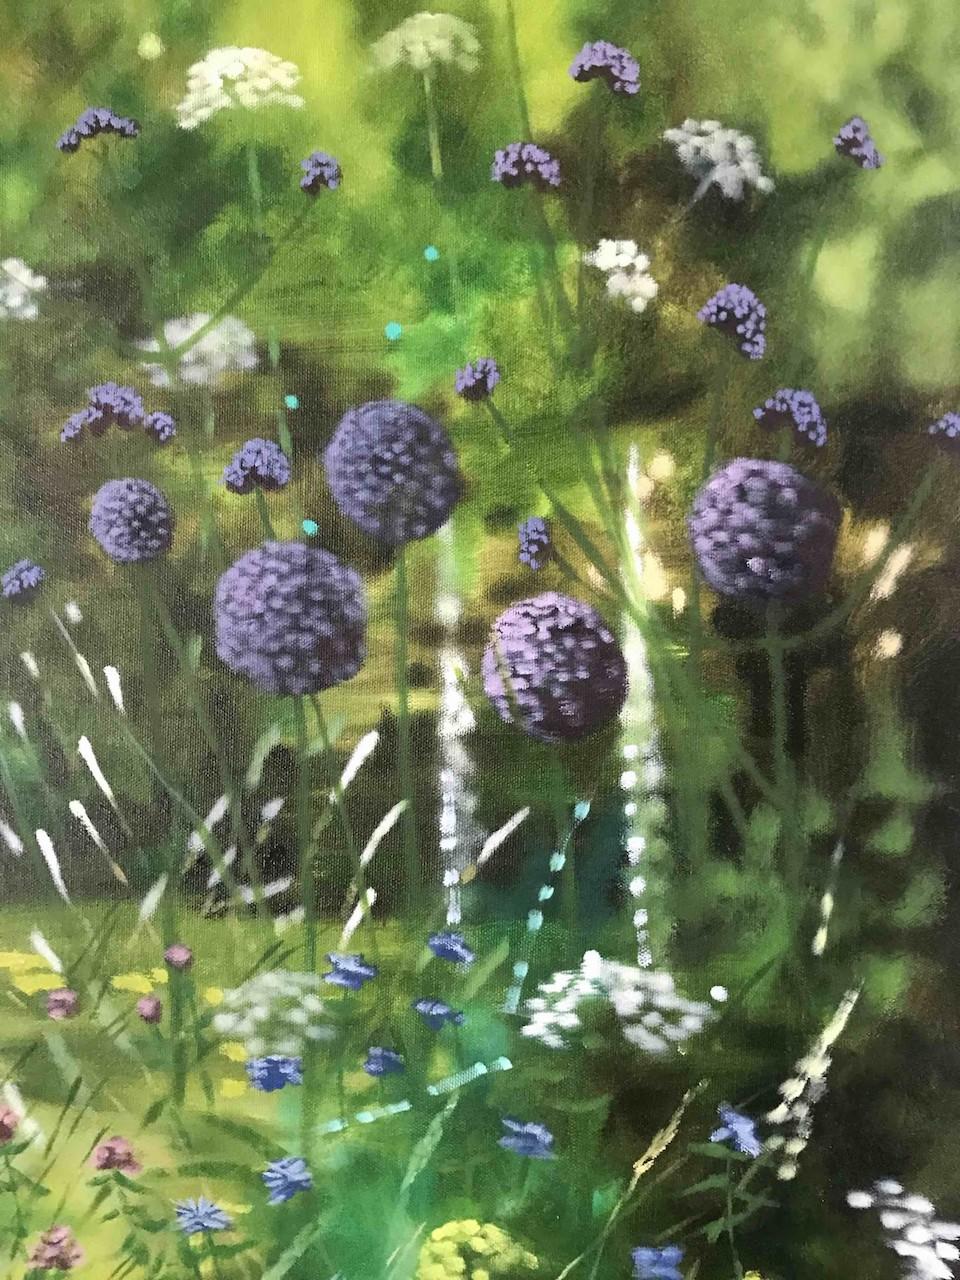 Dorset Summer Garden von Dylan Lloyd ist ein Originalgemälde. Die Szene bietet einen Blick auf einen schönen, blühenden Garten im Sommer.

Dylan Lloyd bietet Originalgemälde online bei Wychwood Art Gallery und in der Deddington Art Gallery zum